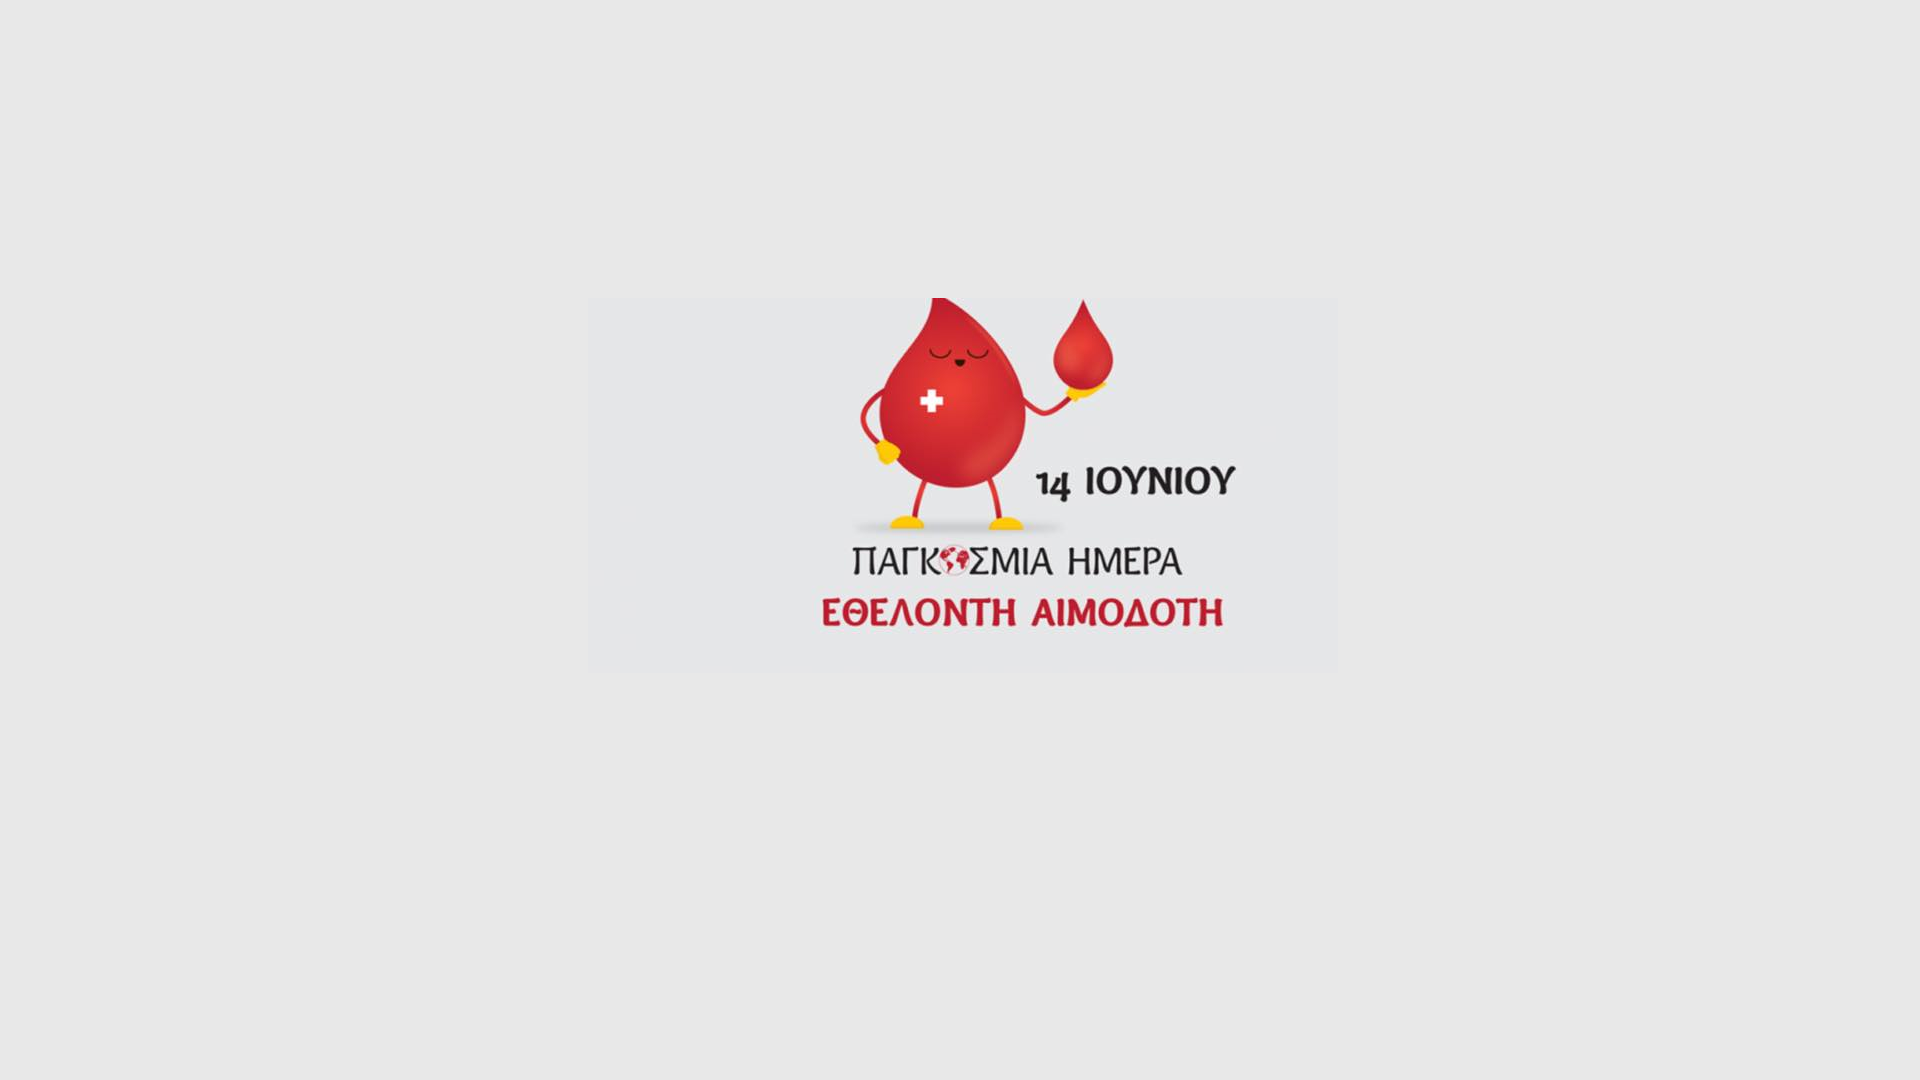 14 Ιουνίου Παγκόσμια ημέρα Εθελοντή Αιμοδότη